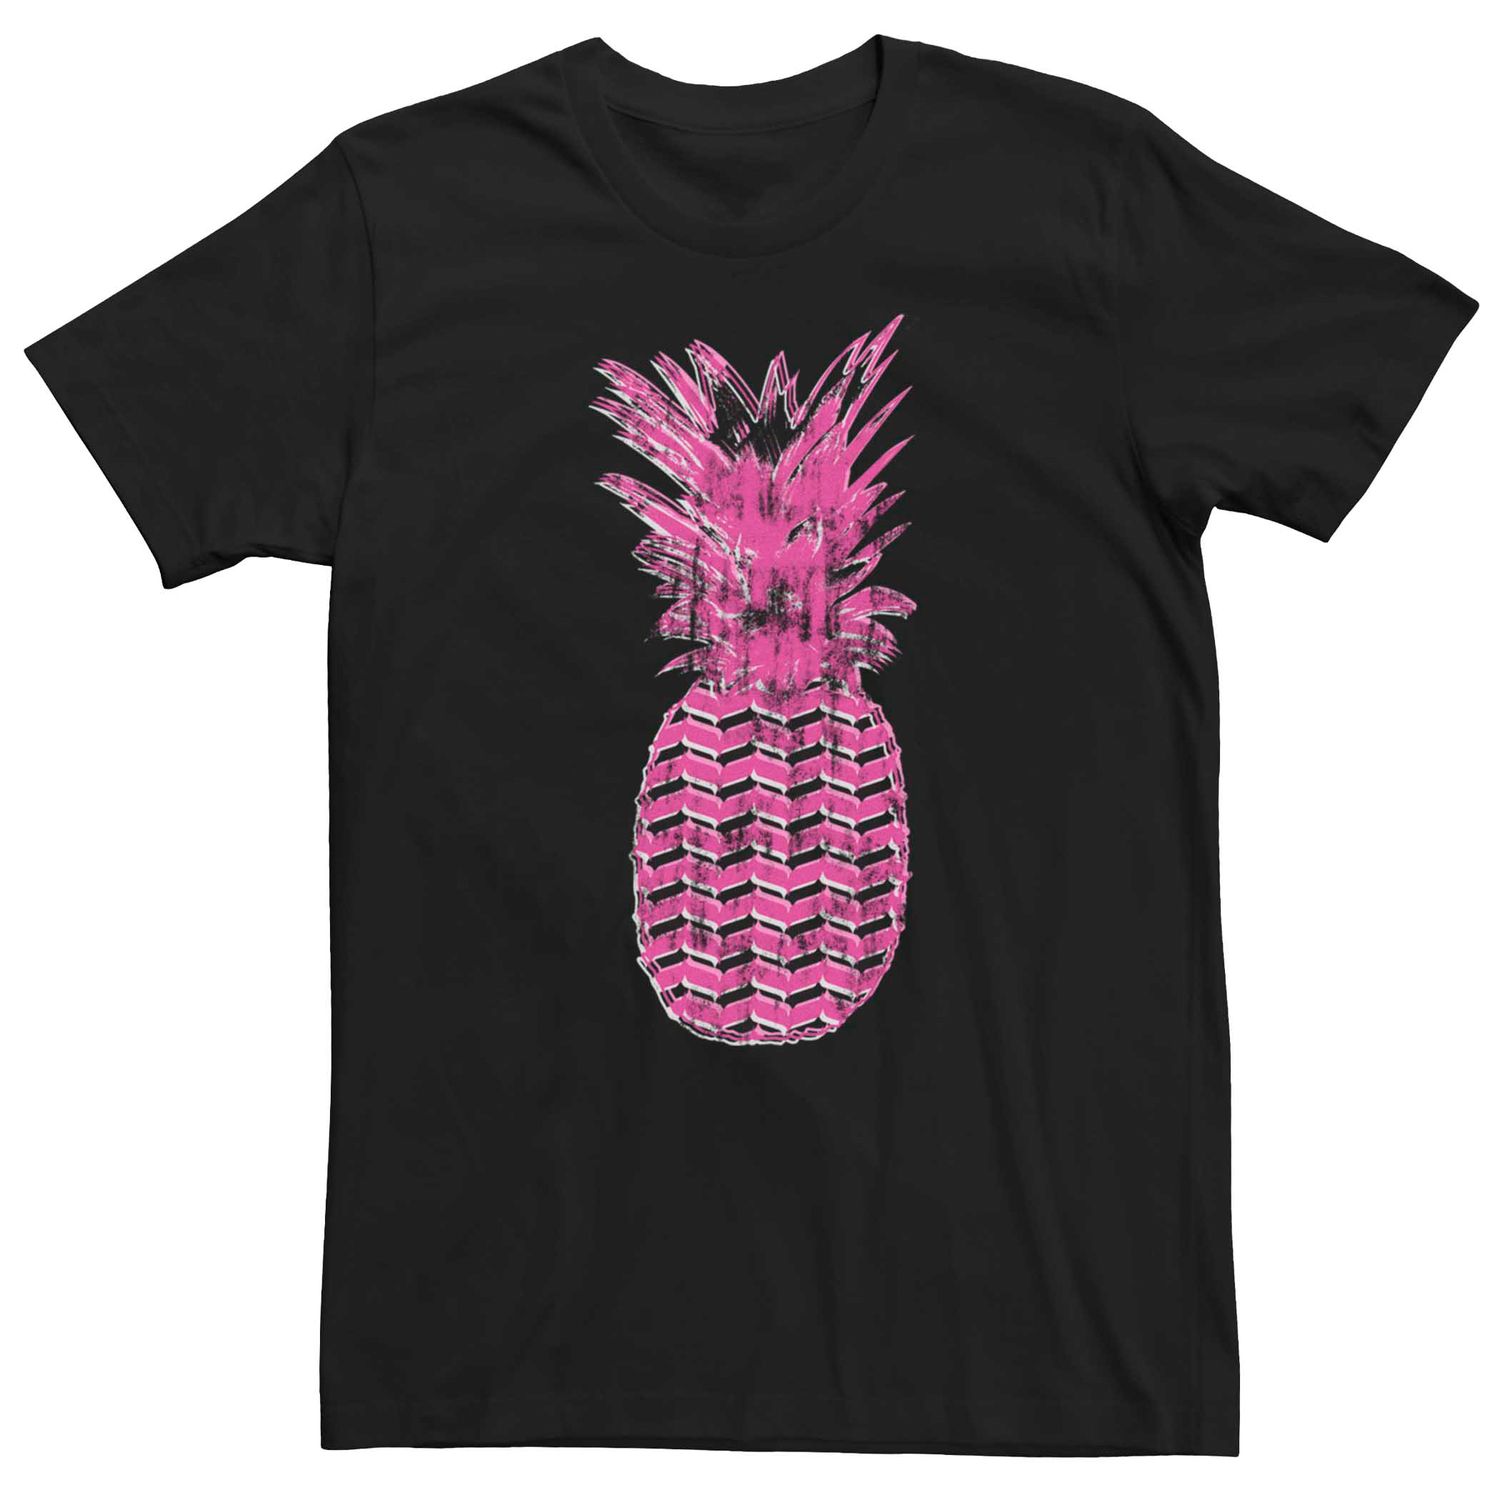 Мужская футболка с рисунком ананаса и рисунком Licensed Character мужская футболка с рисунком и рисунком breakfast club licensed character